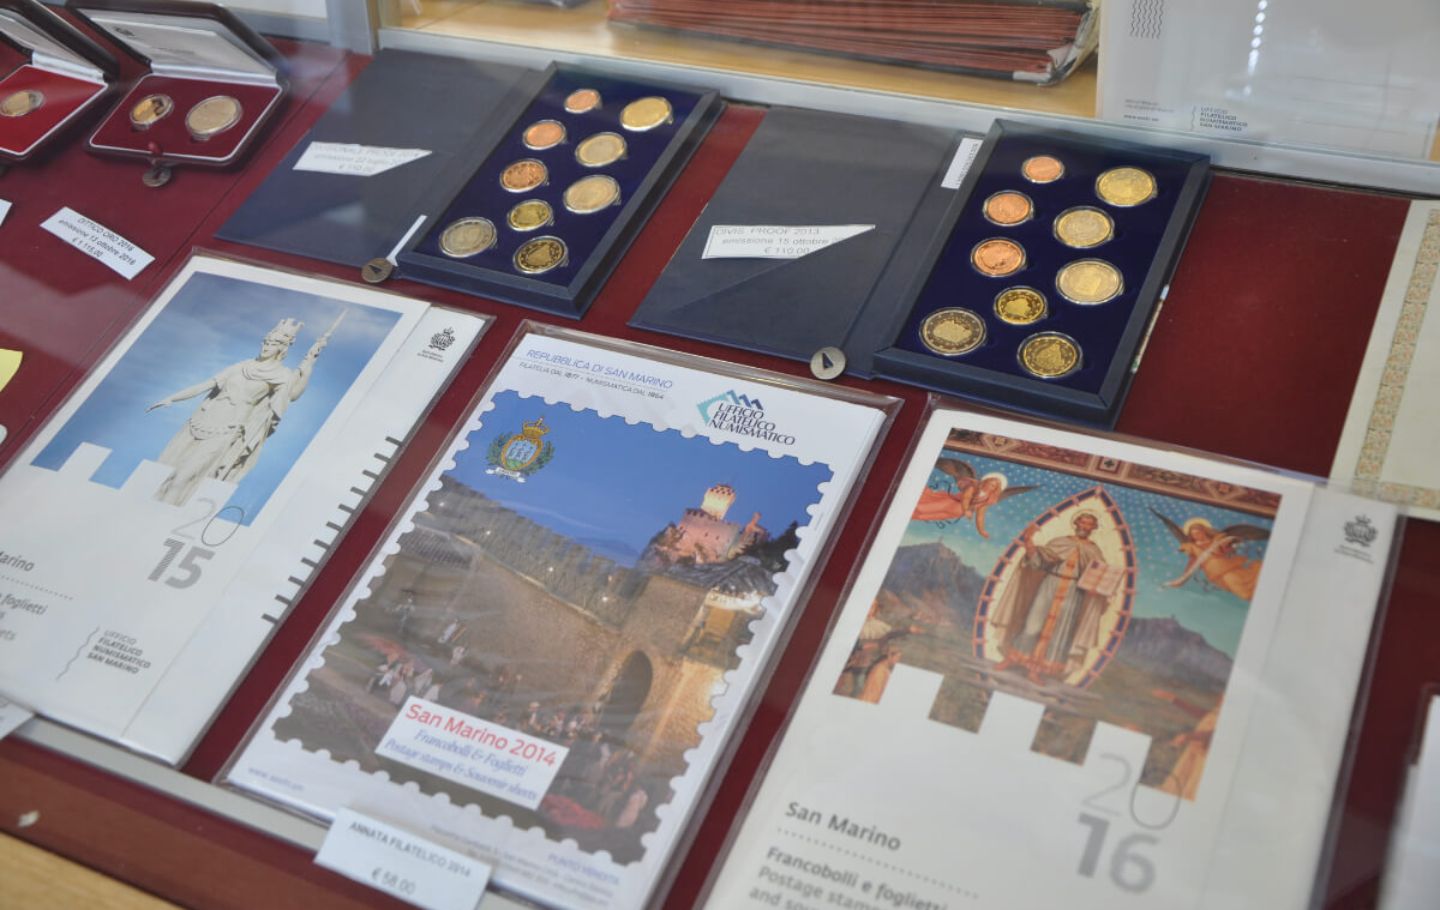 Philatelie und Numismatik (Münzen und Briefmarken) in San Marino